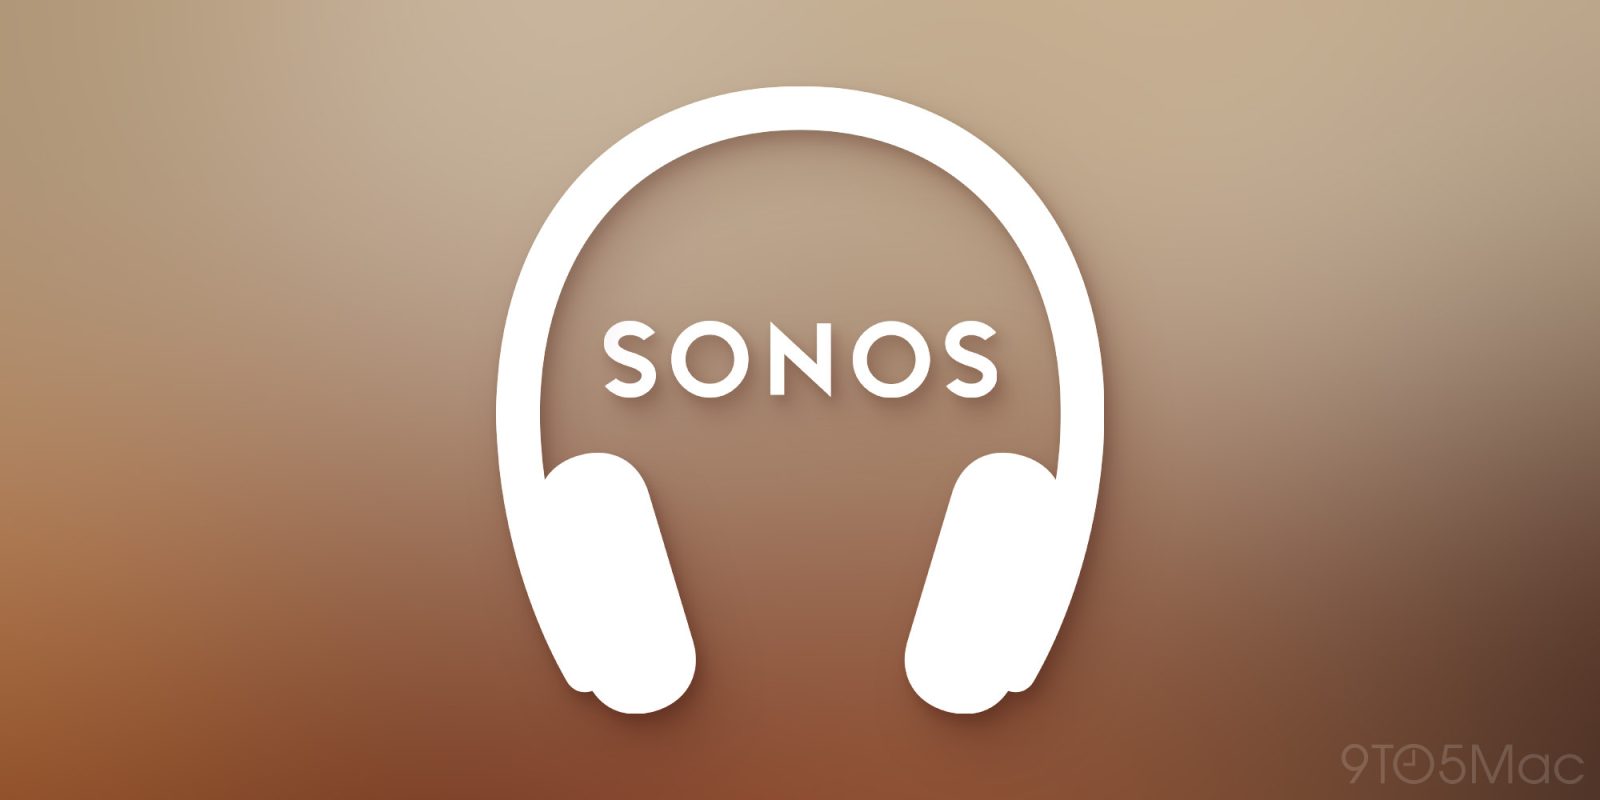 Sonos почти готов конкурировать с AirPods Max, свидетельствуют документы FCC